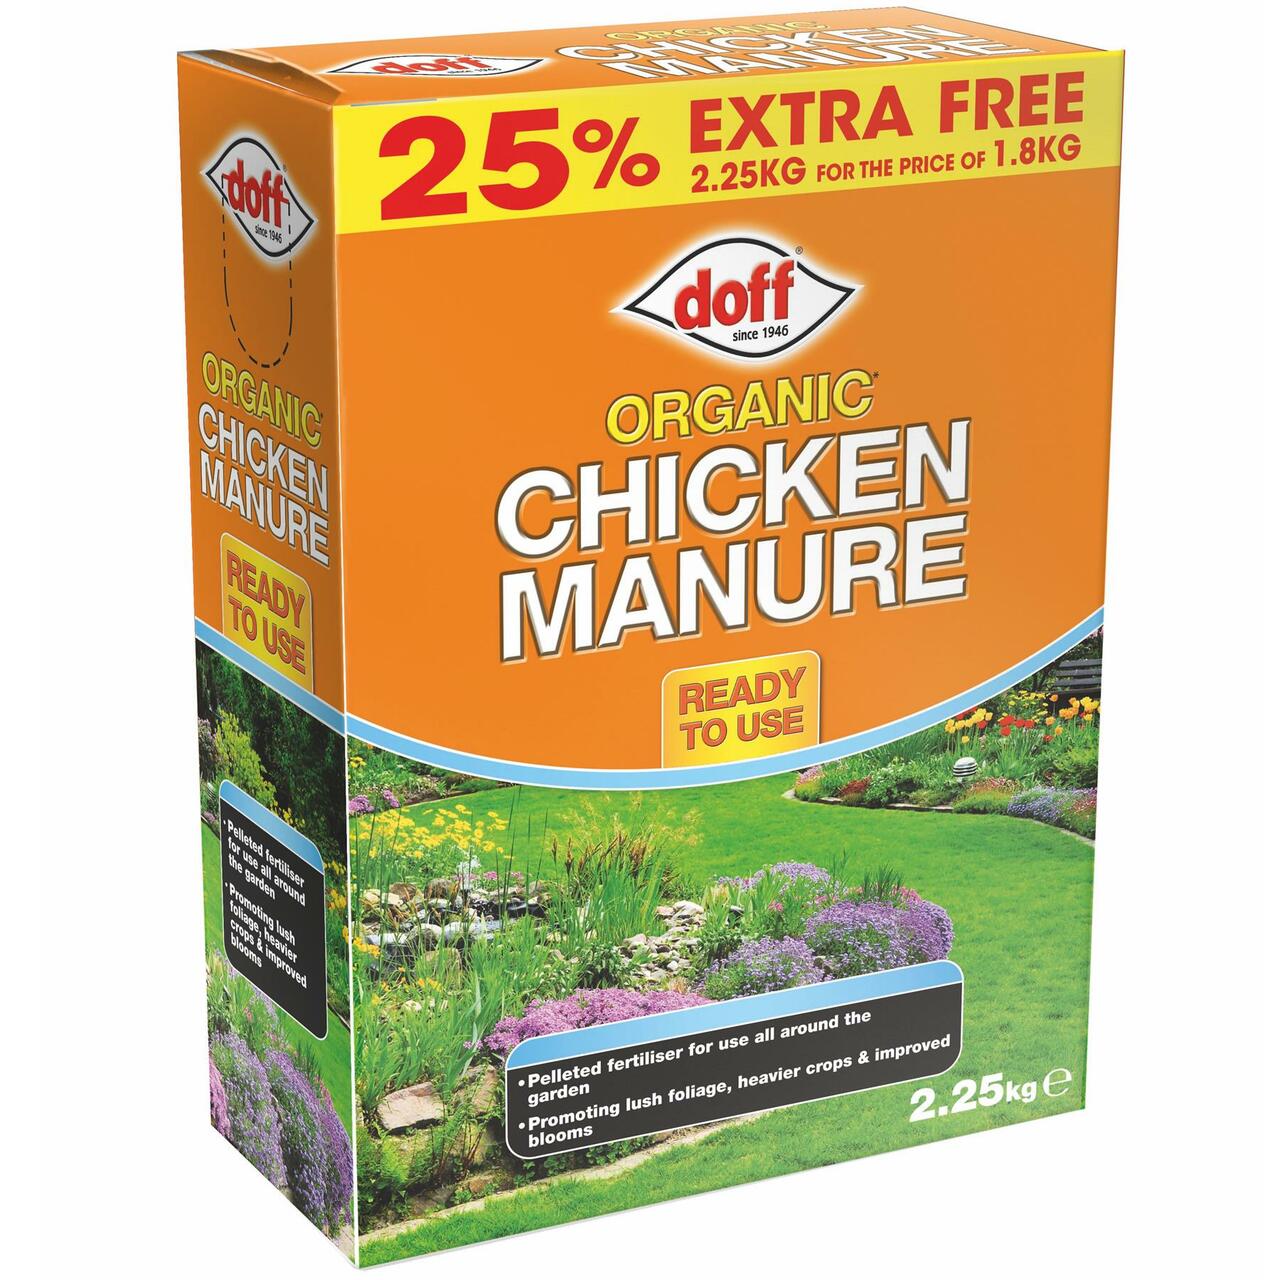 Doff-Organic-Chicken-Manure-2.25kg